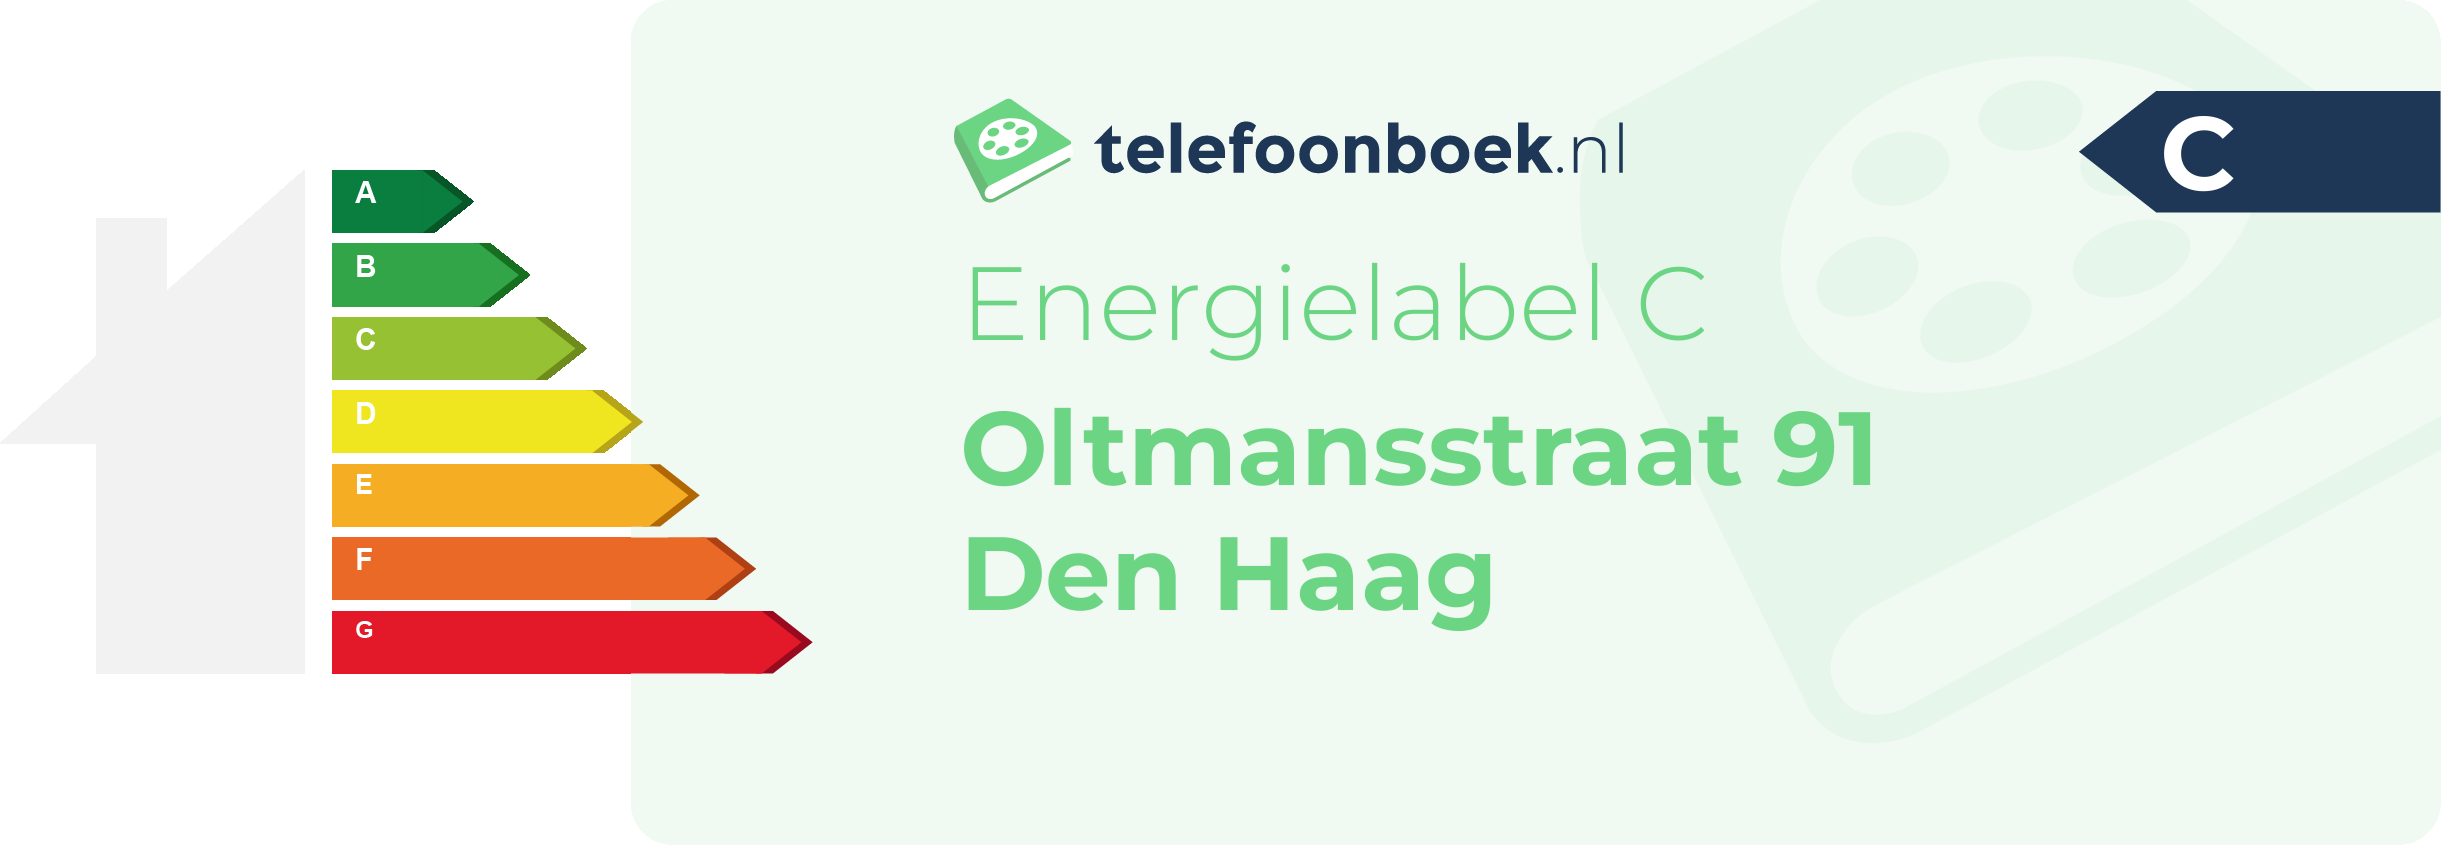 Energielabel Oltmansstraat 91 Den Haag